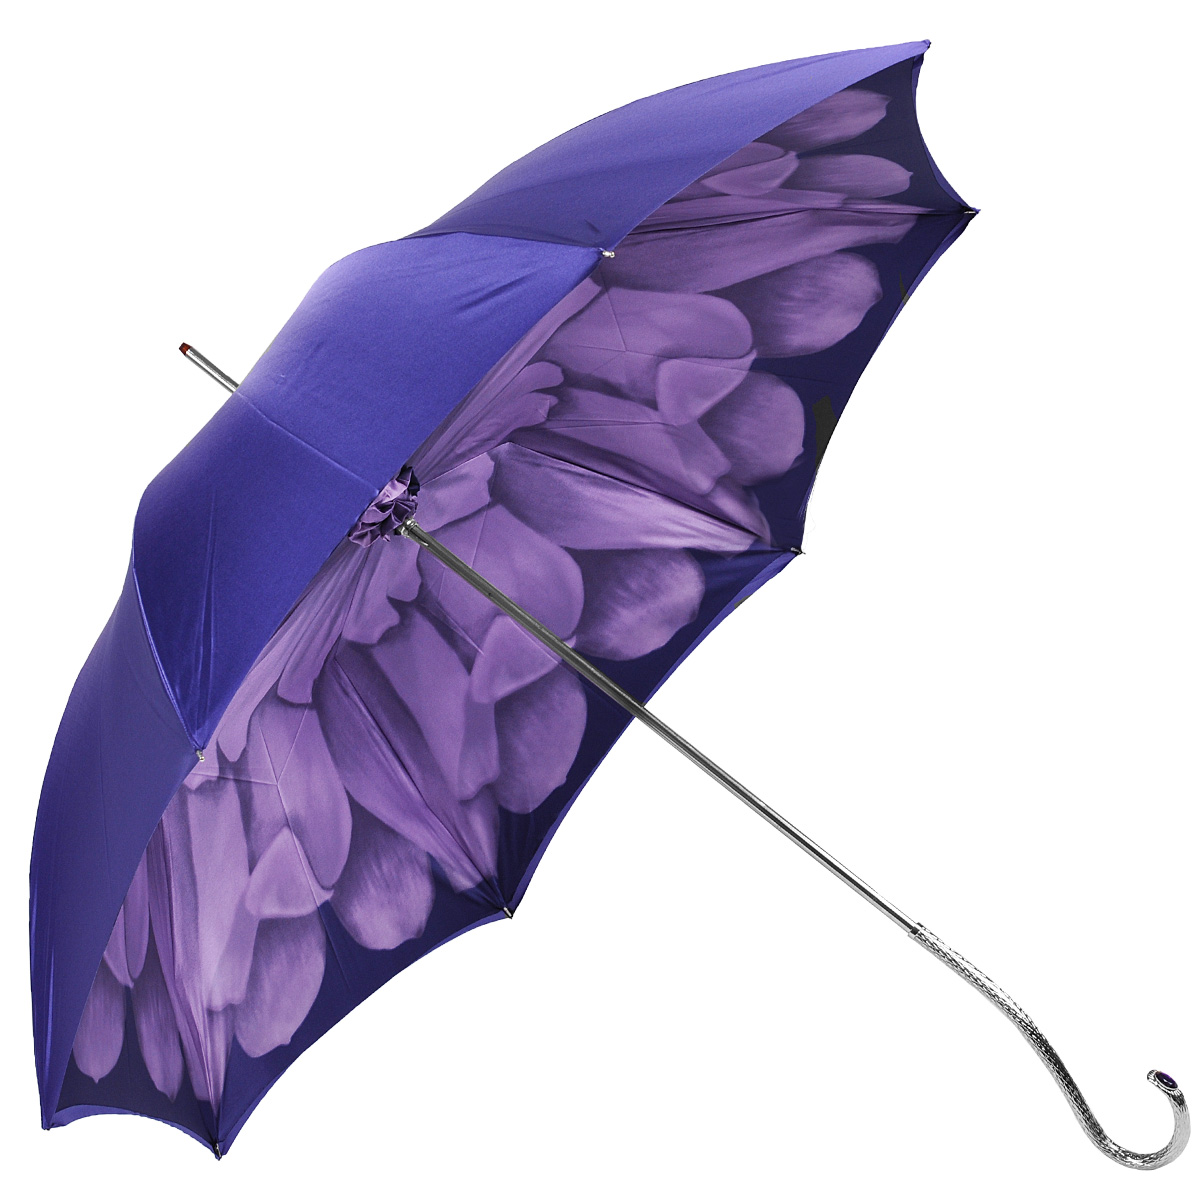 Зонт-трость женский Pasotti "Фиолетовый цветок", механический, цвет: фиолетовый. 189N-21065-71 S13 - купить по доступной цене, каталог аксессуаров интернет магазина OZON.ru